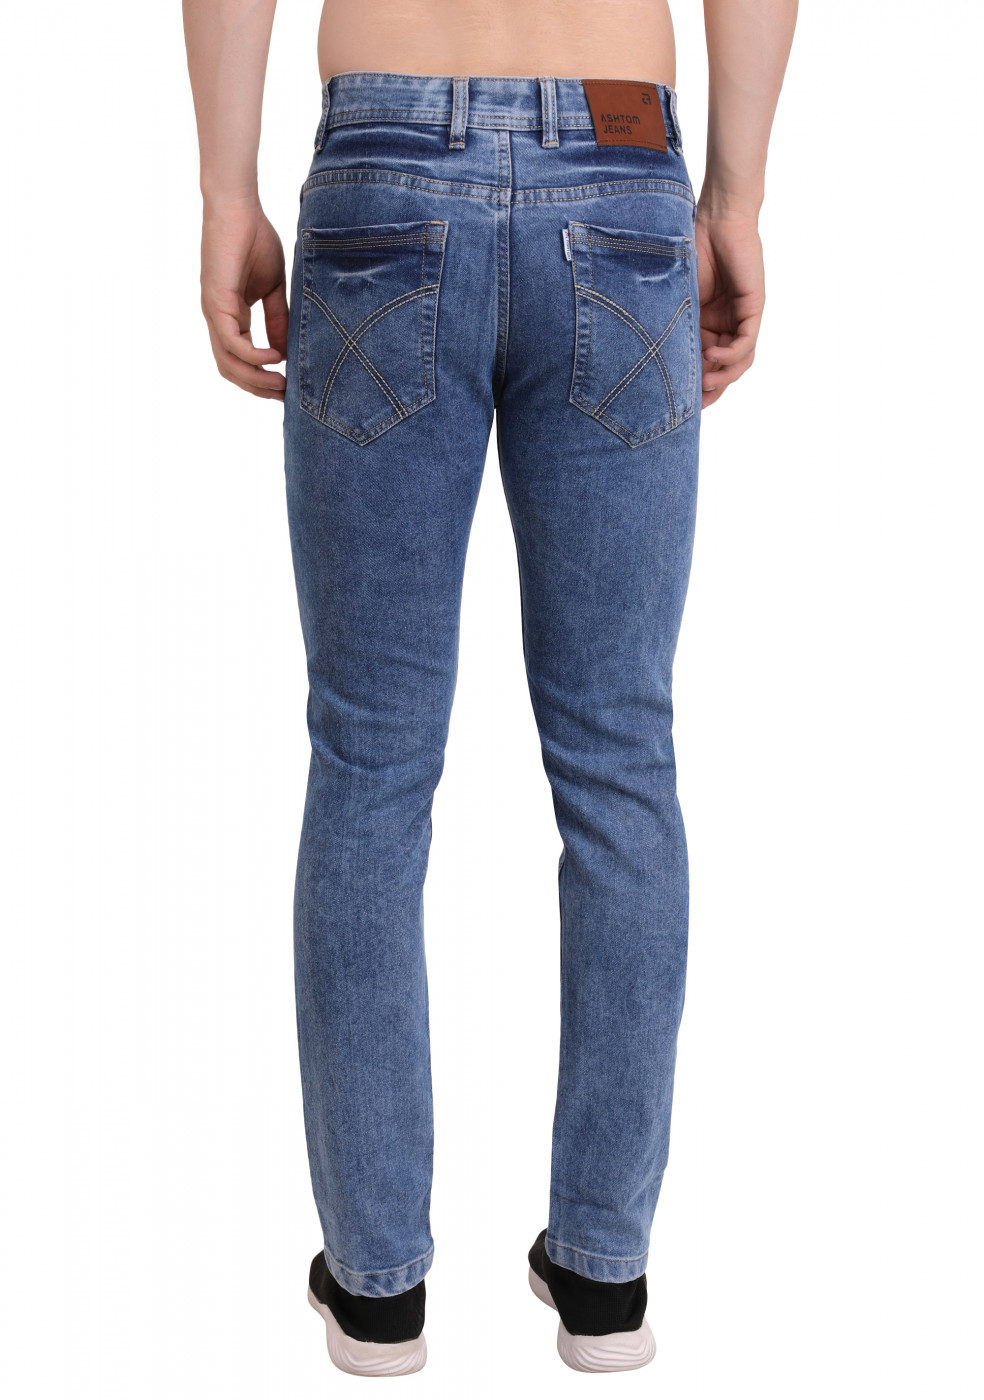 ASHTOM Blue Trendy Jeans For Men